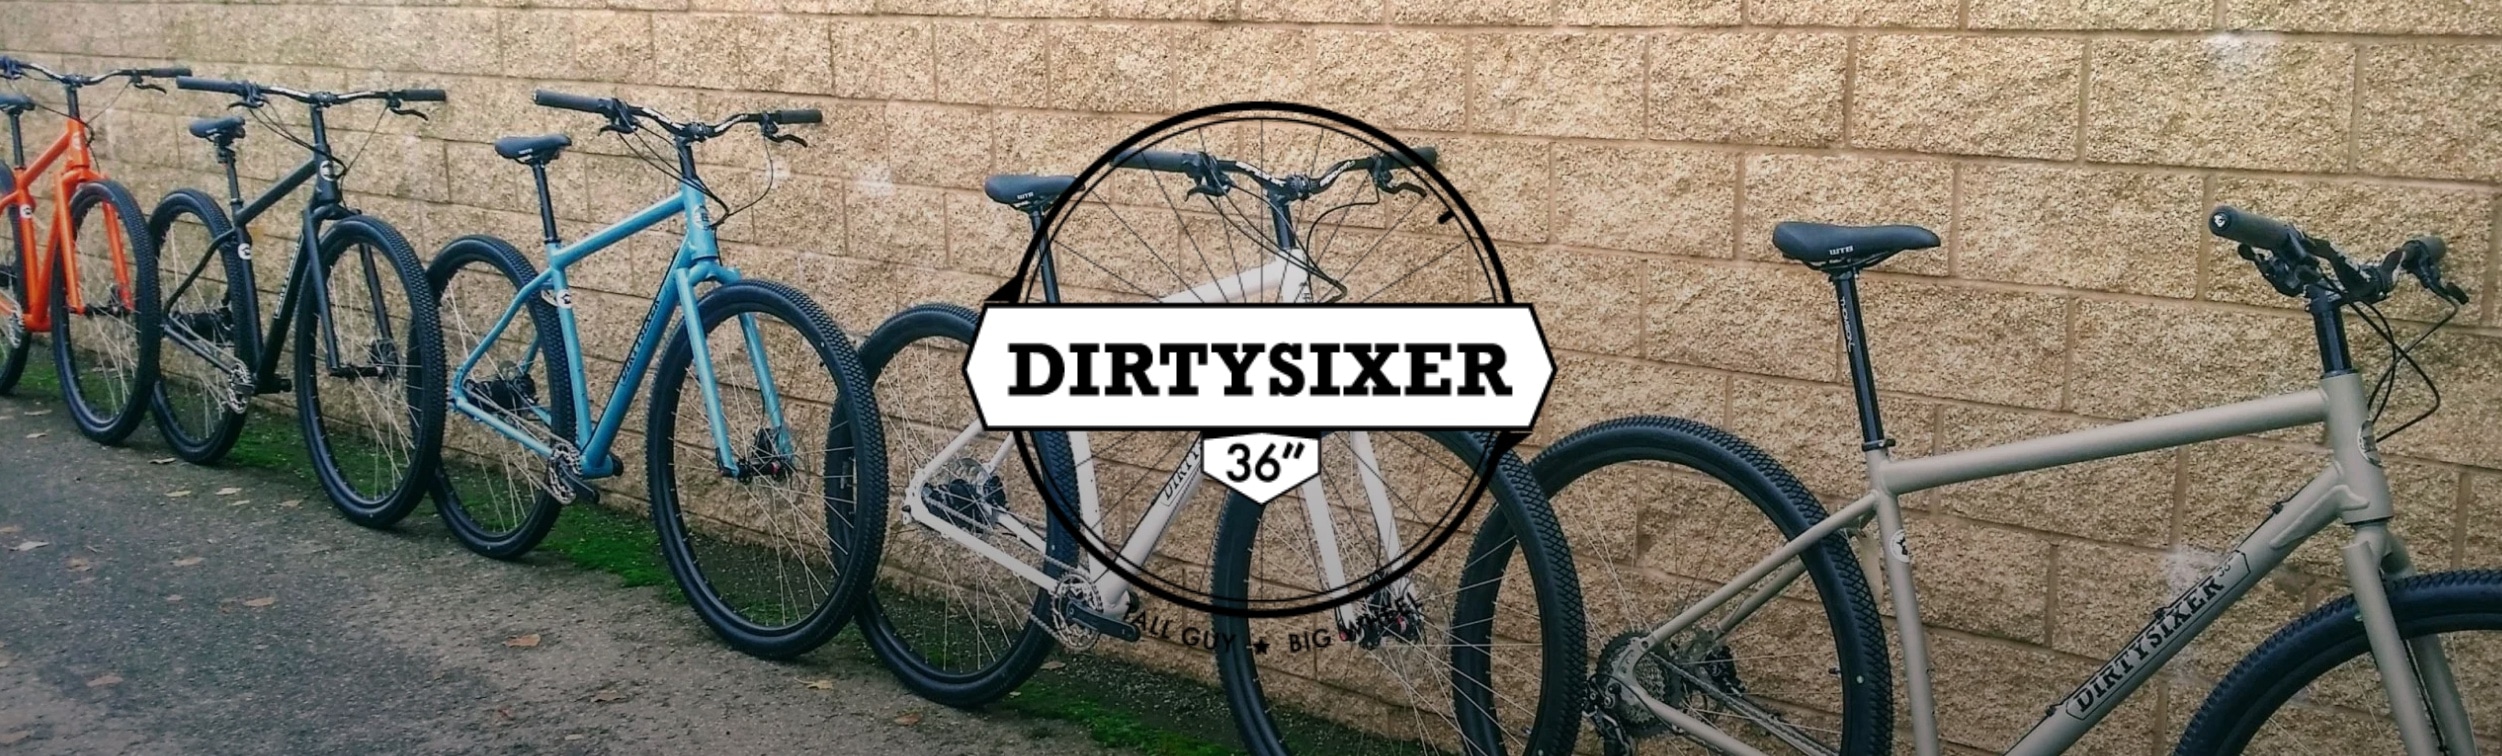 David Folch, fondateur de DirtySixer, fabricant des plus grands vélos au monde